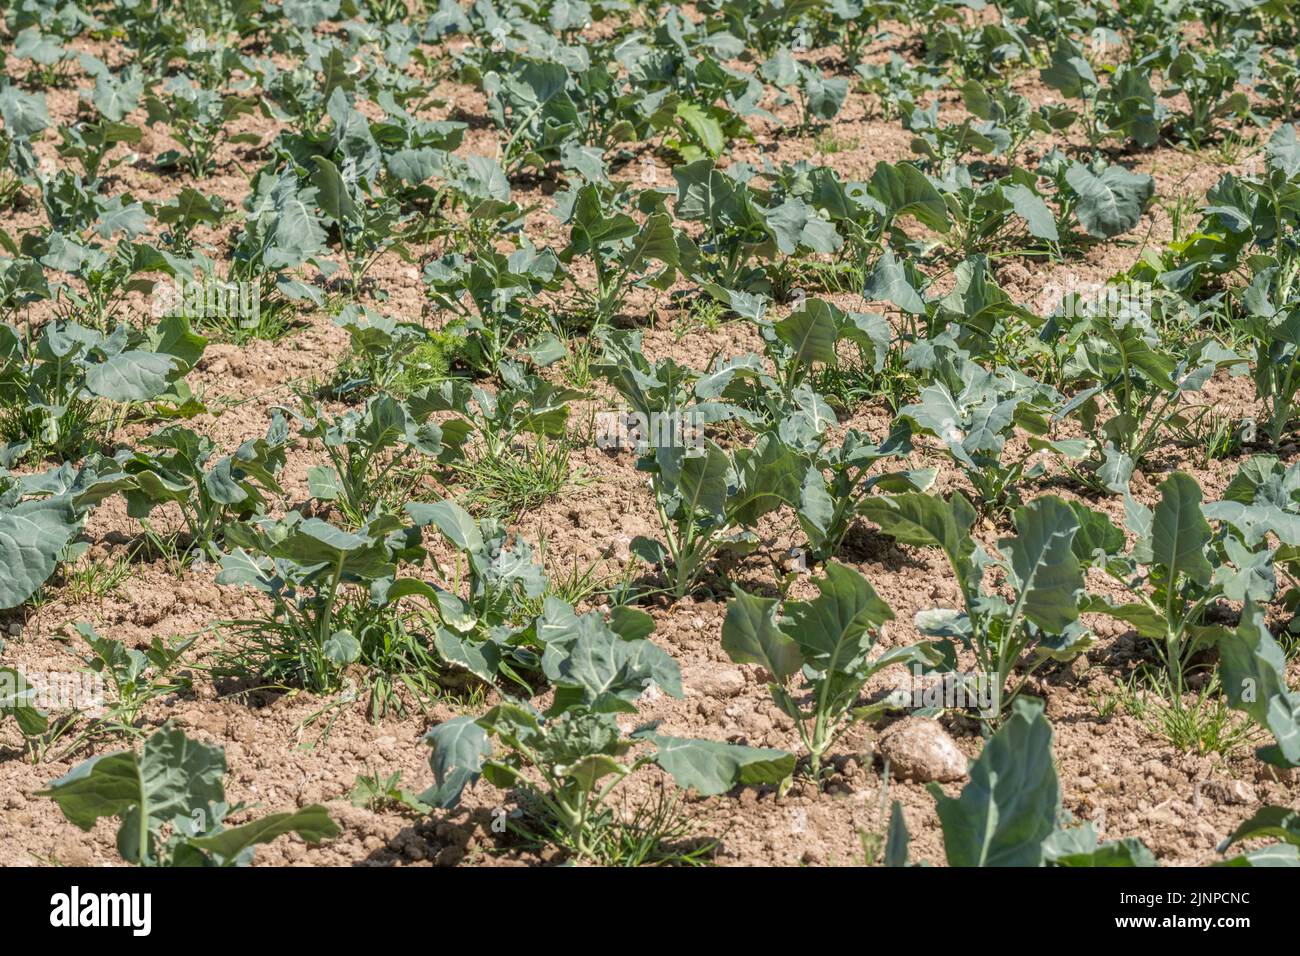 Brassica-Ernte, die auf dem Feld wächst - kann Kohl oder Rüben sein. Für Wurzelpflanzen, den kommerziellen Gemüseanbau in Großbritannien, den Ackerbau in Großbritannien, die Kohlfamilie. Stockfoto